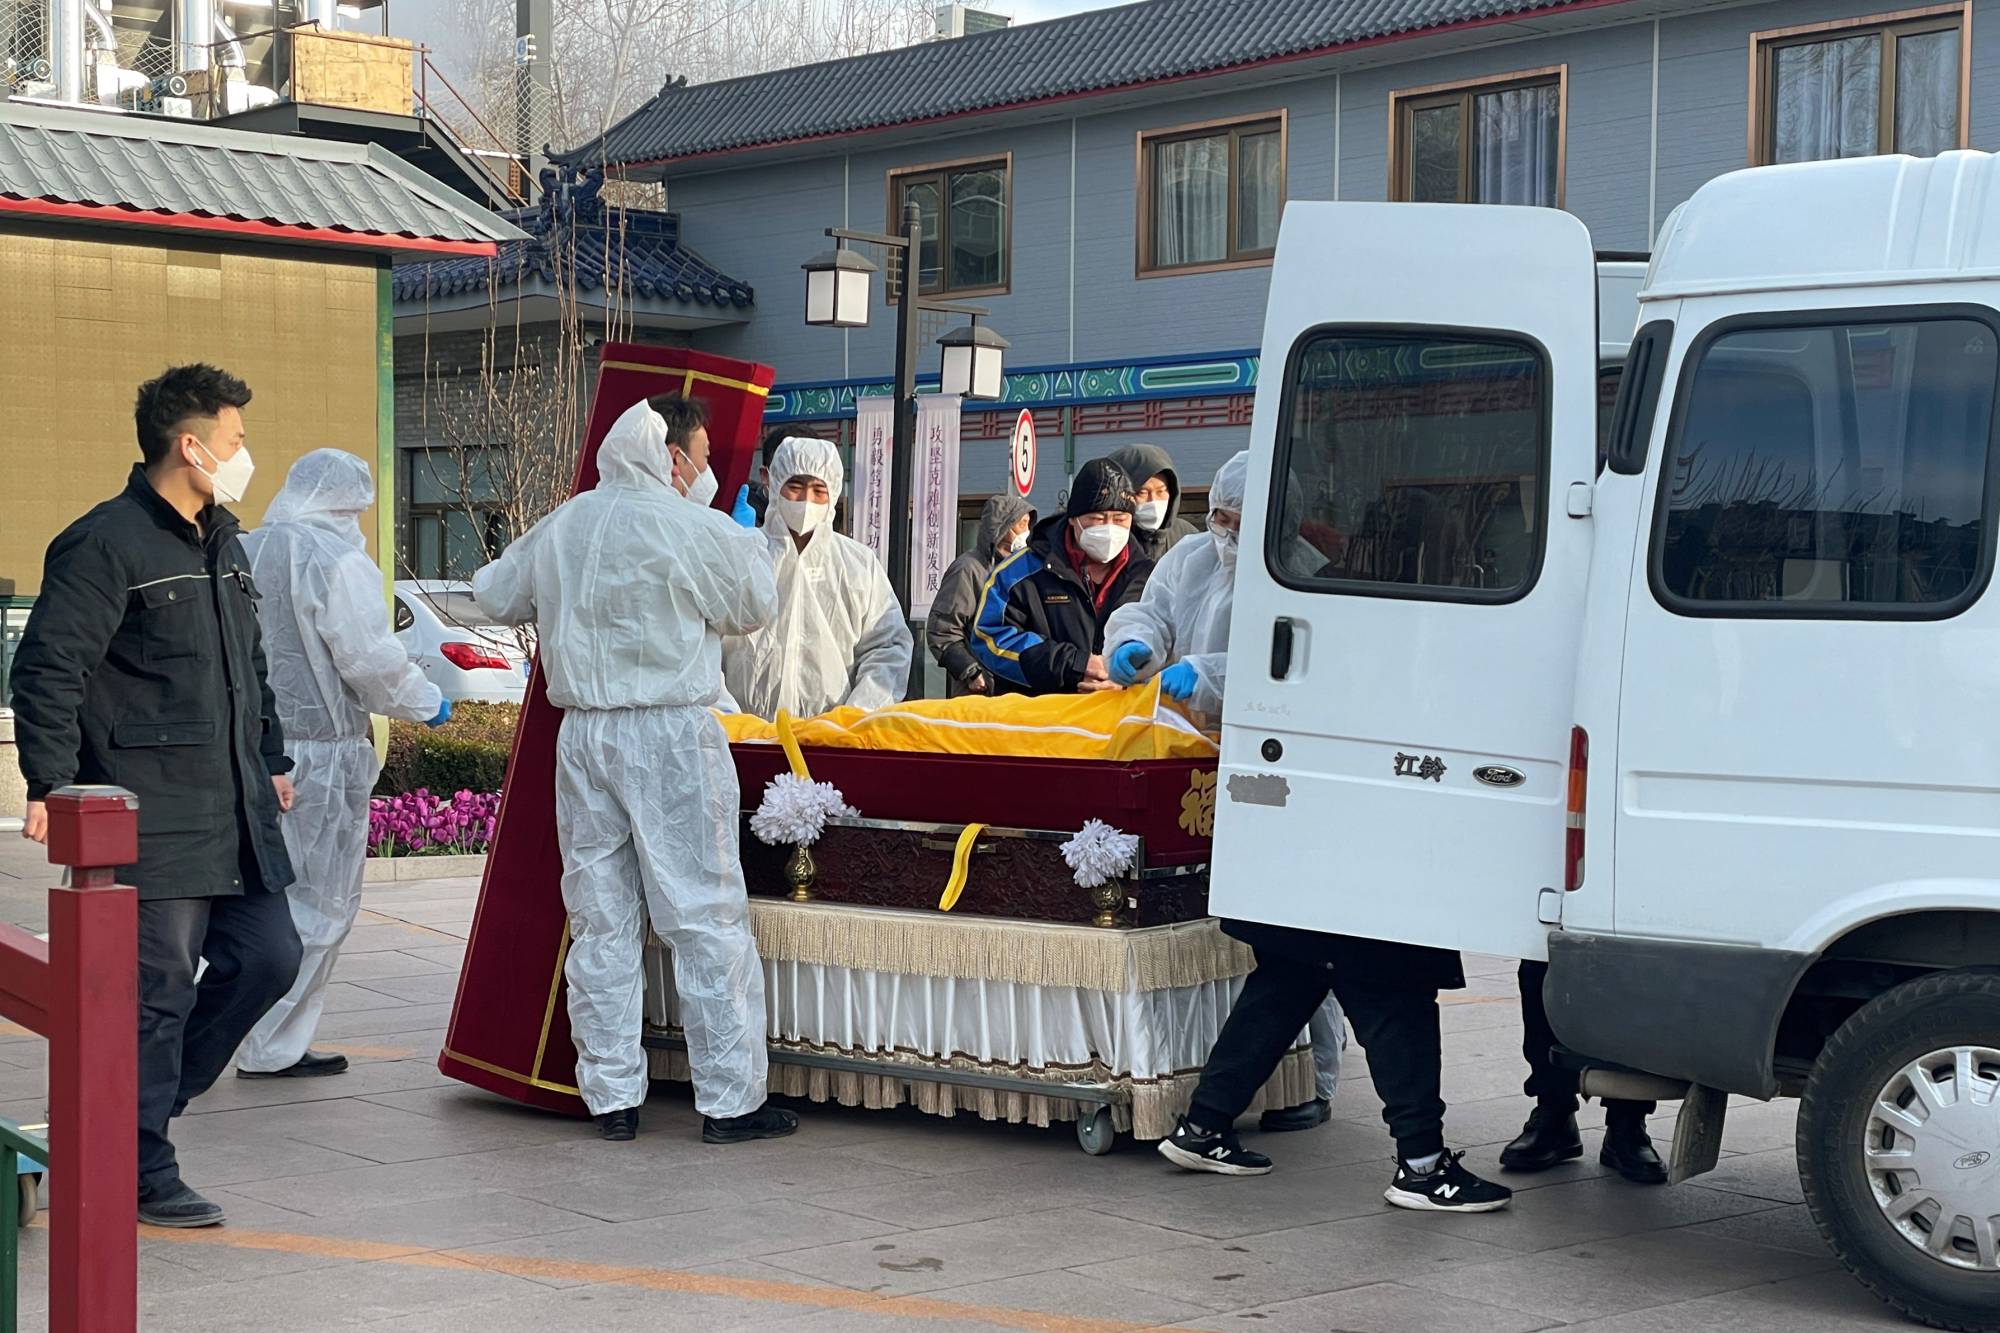 một nhà hỏa táng ở Bắc Kinh đã hỏa táng thi thể của ít nhất 30 nạn nhân COVID-19 trong ngày 14/12